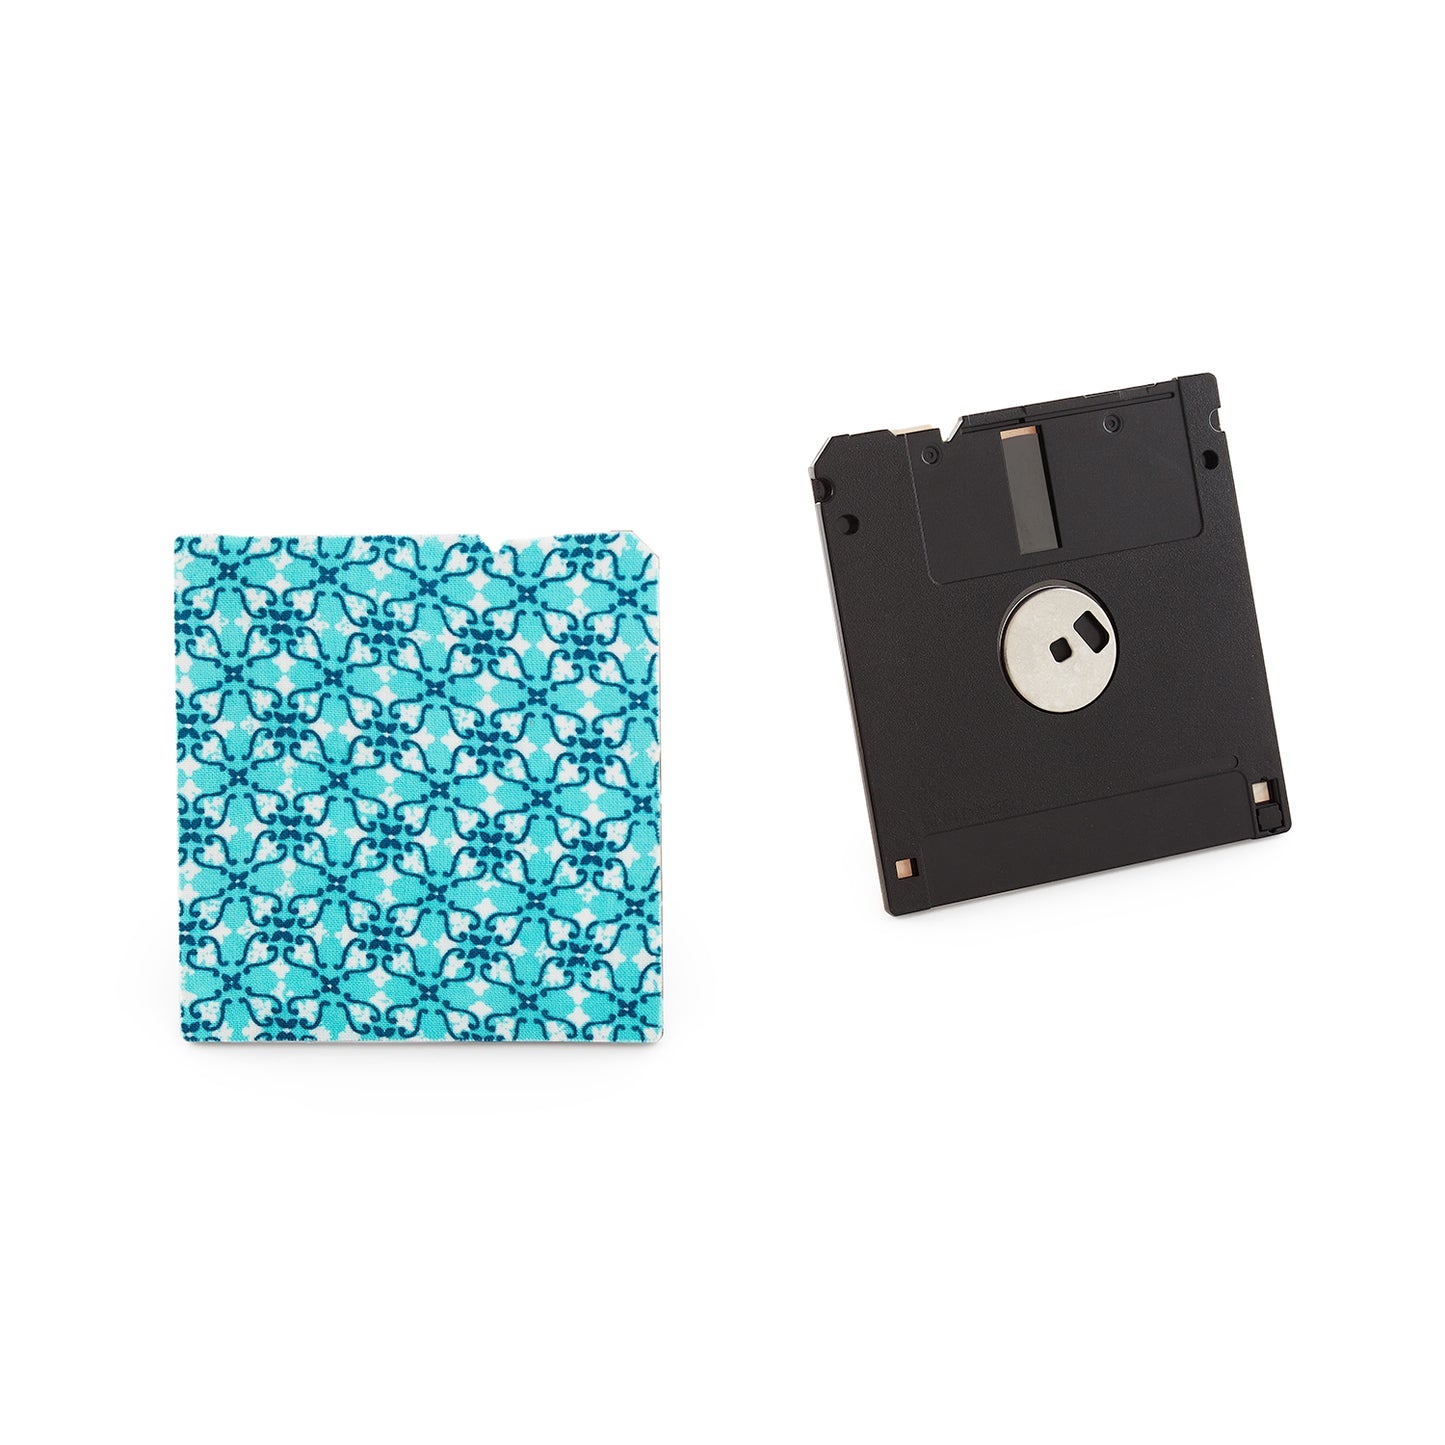 Cerulean Blue - Floppy Disk Coaster Set of 2